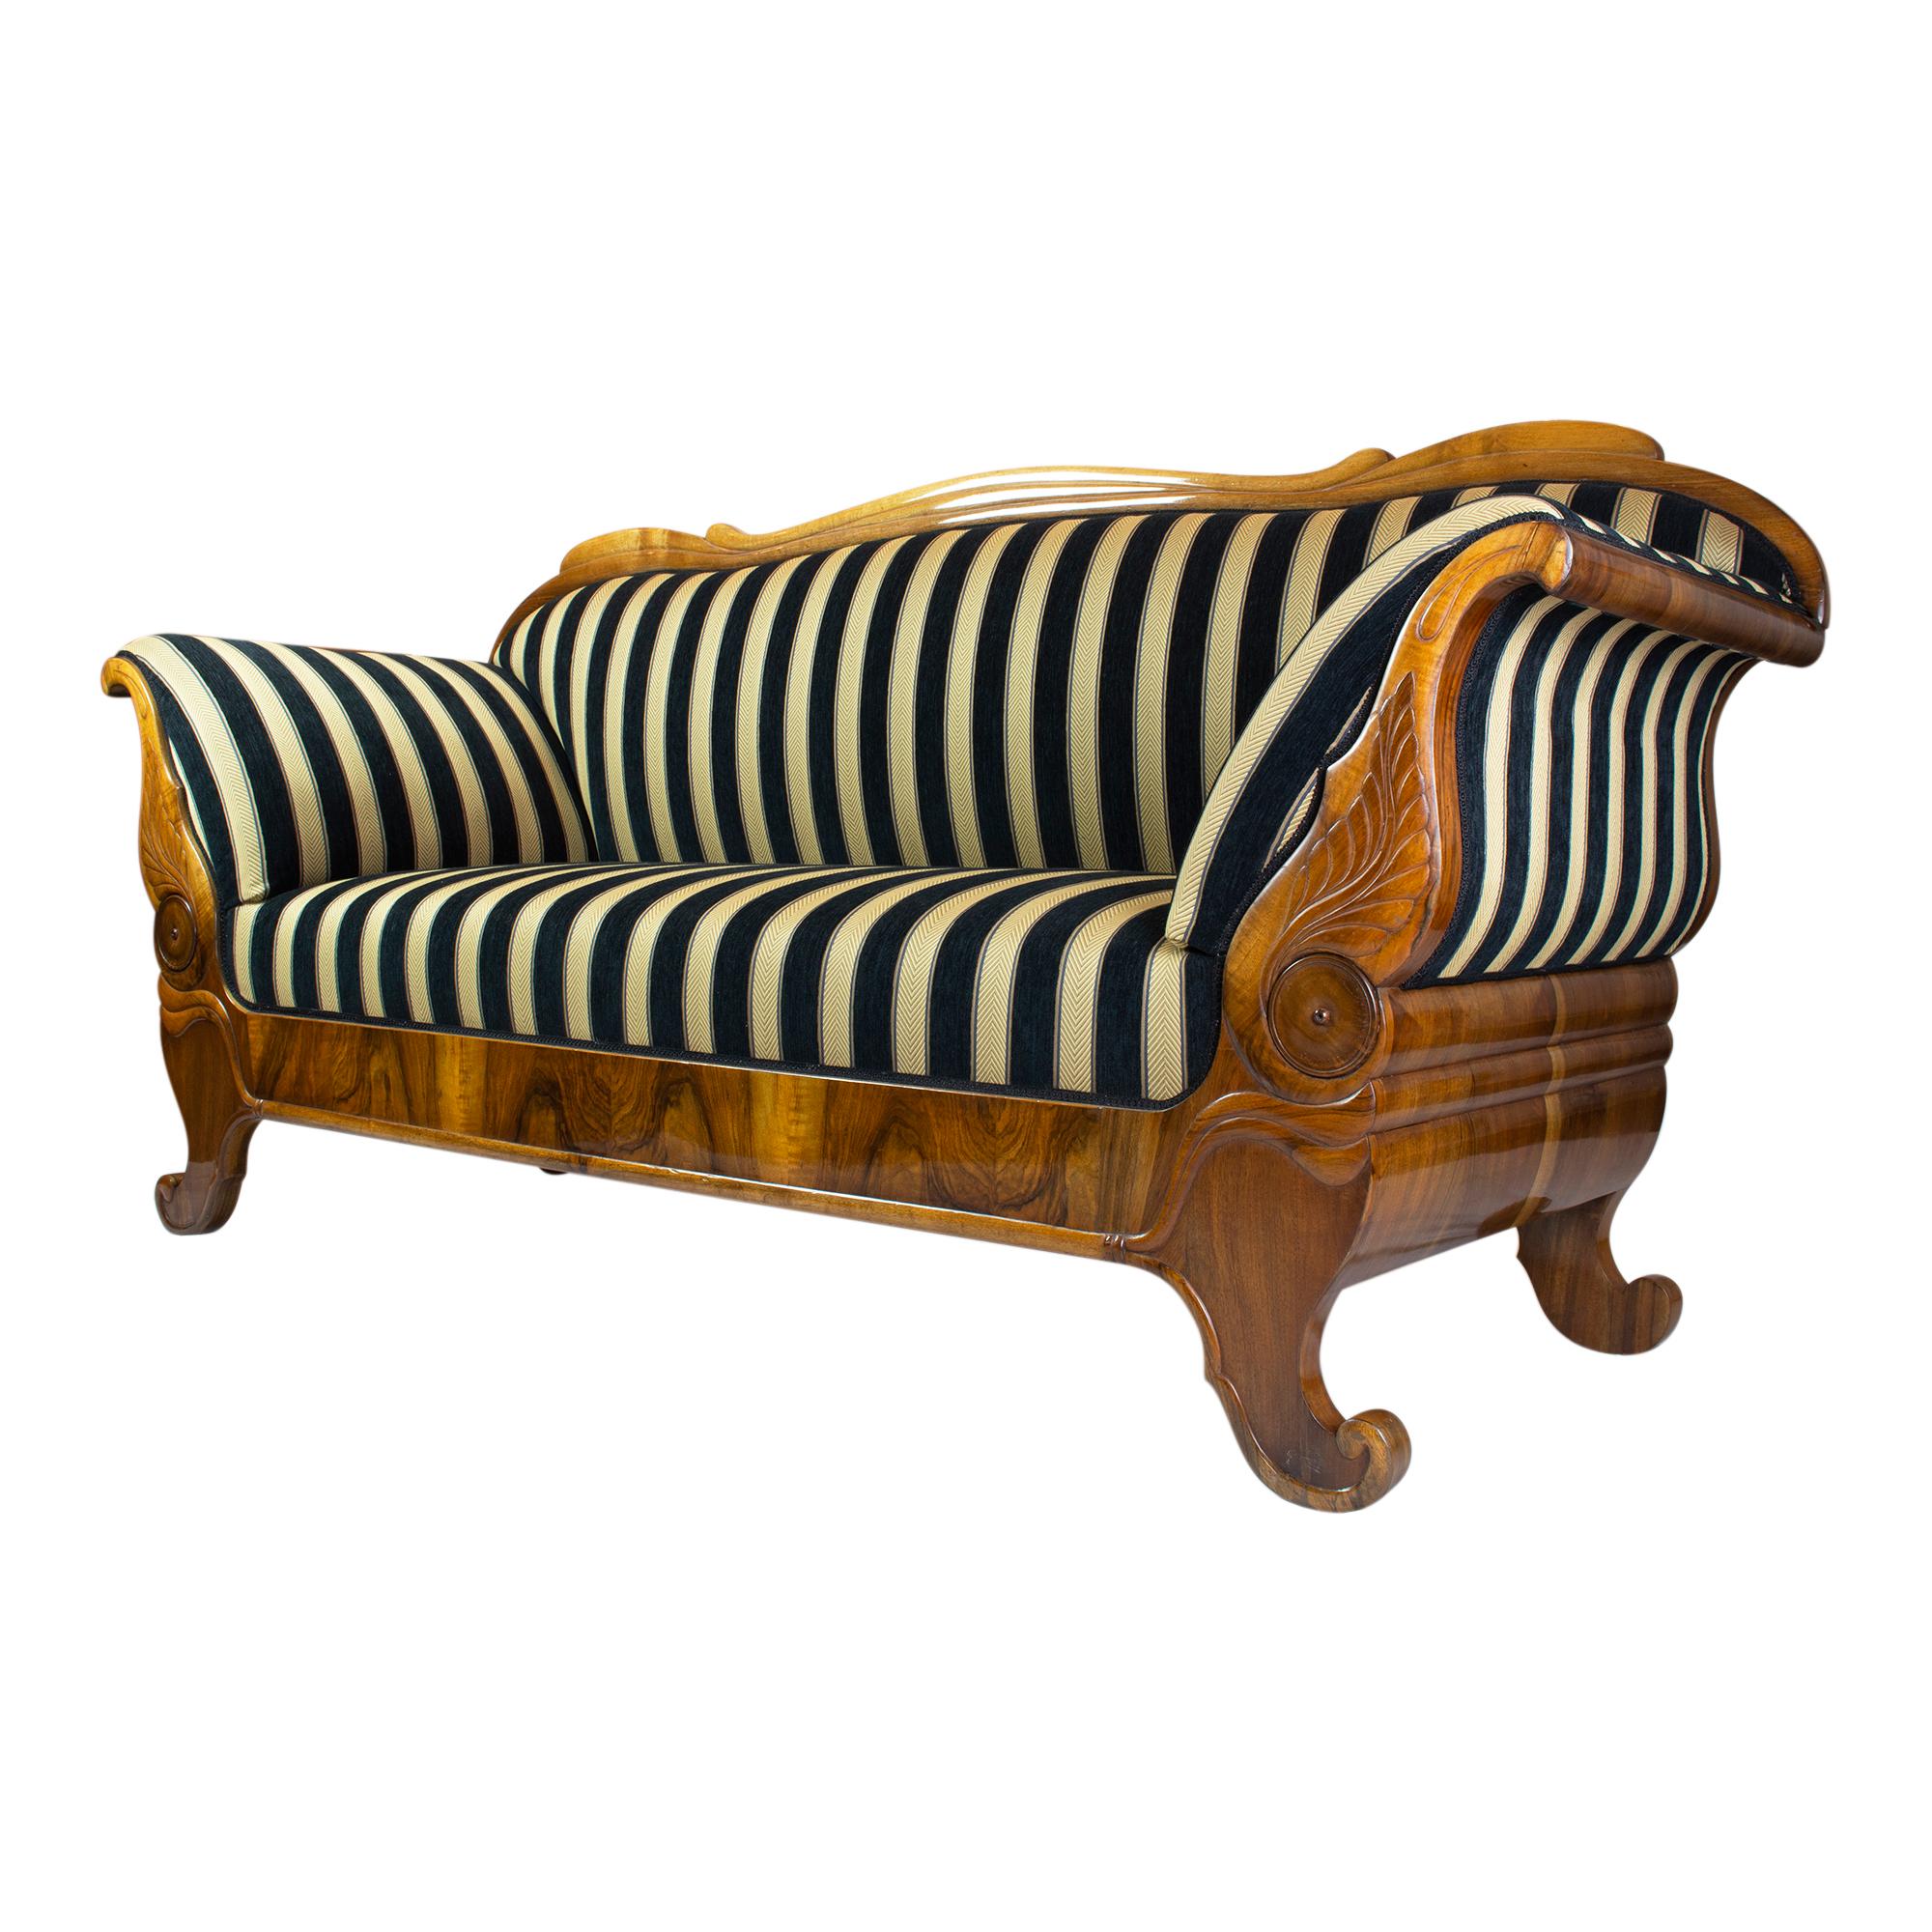 Le canapé Biedermeier, qui date d'environ 1825, est un véritable classique du mobilier. Fabriqué à partir d'un beau bois de noyer, il a été poli à la main avec de la gomme-laque pour obtenir une finition étonnante. Récemment retapissé avec un